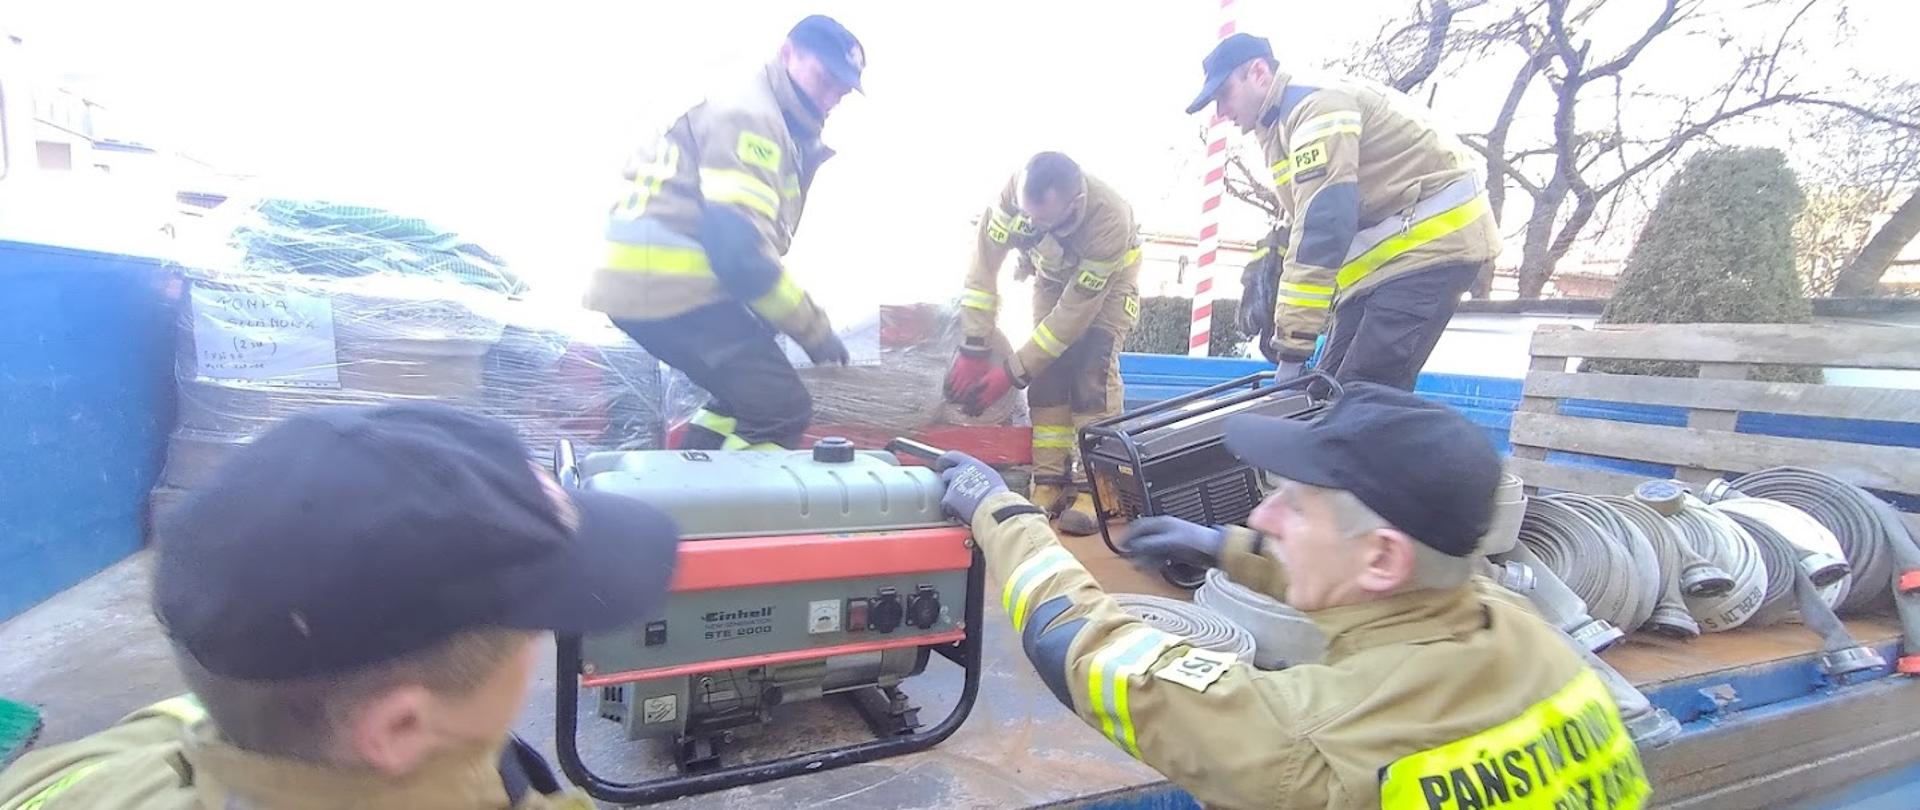 Załadunek sprzętu przeznaczonego dla strażaków z Ukrainy